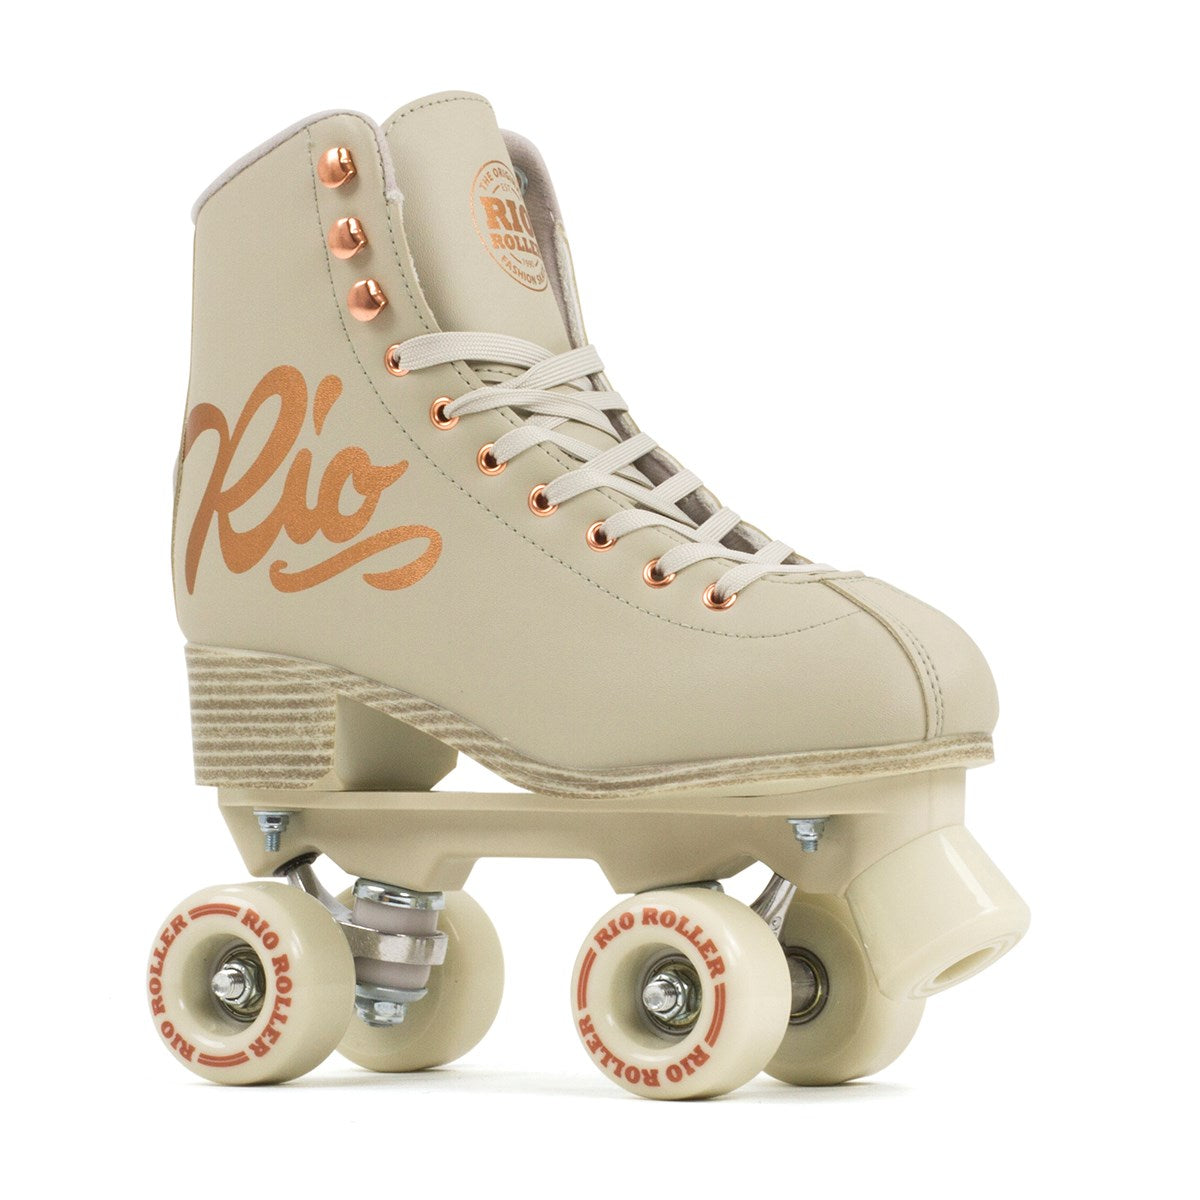 Rio Roller Rose Roller Skates Complete Starter Kit - Cream